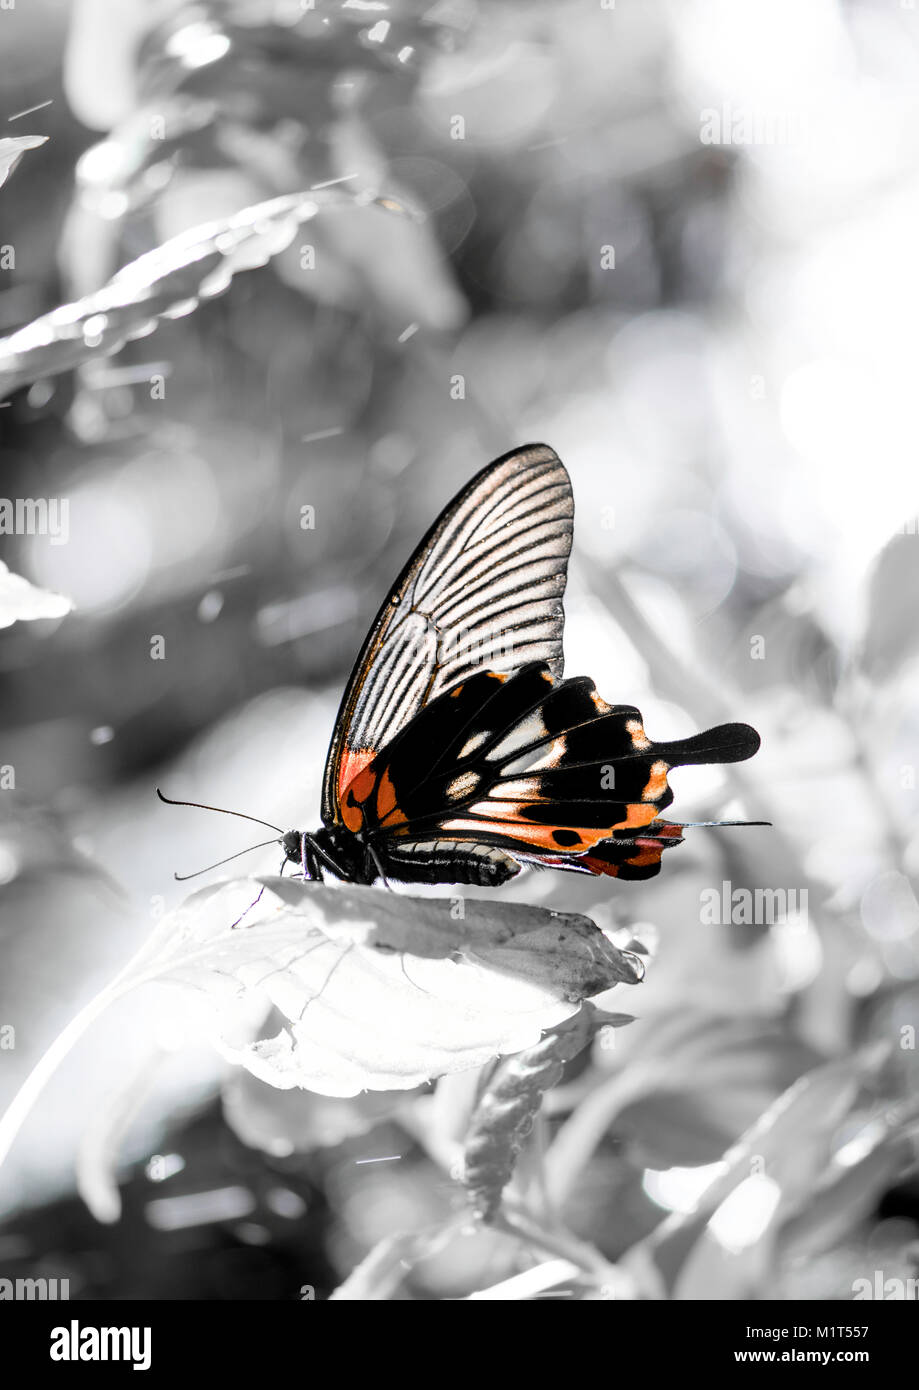 Formato Vertical de mariposas, de color naranja y negro contra un fondo gris. Foto de stock